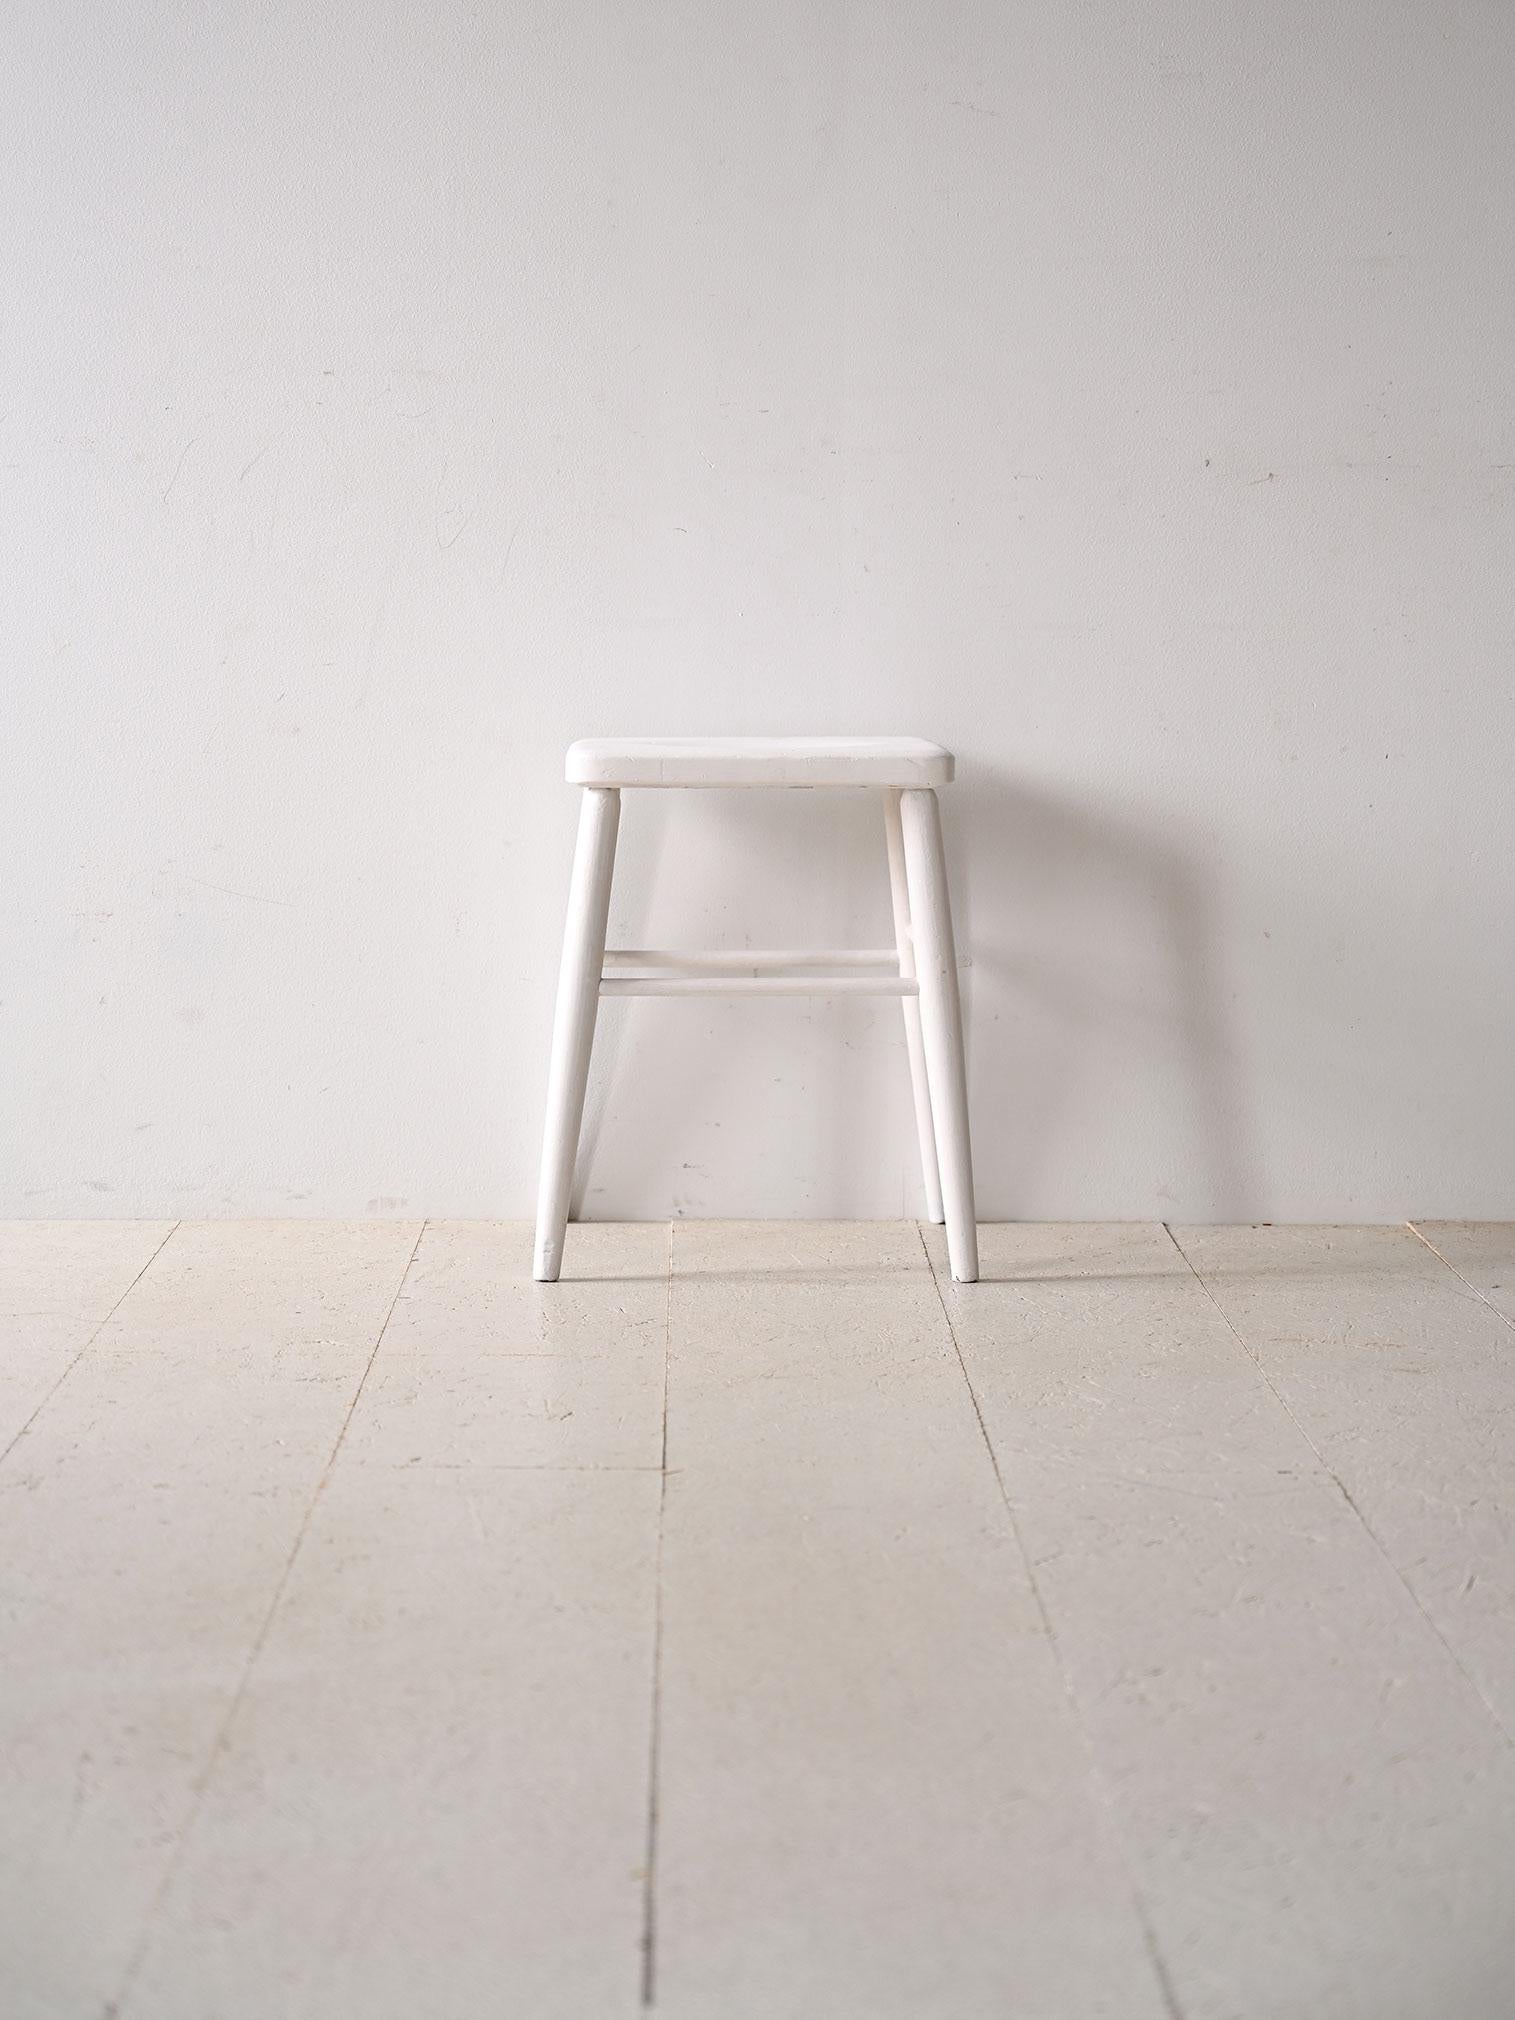 Skandinavischer Vintage-Hocker, weiß lackiert.

Dieser Holzsitz erinnert in seiner Einfachheit an die wesentlichen Elemente des nordischen Designs: minimale Linien, weiche Formen und sich verjüngende Beine. Die weiße Farbe macht ihn modern und